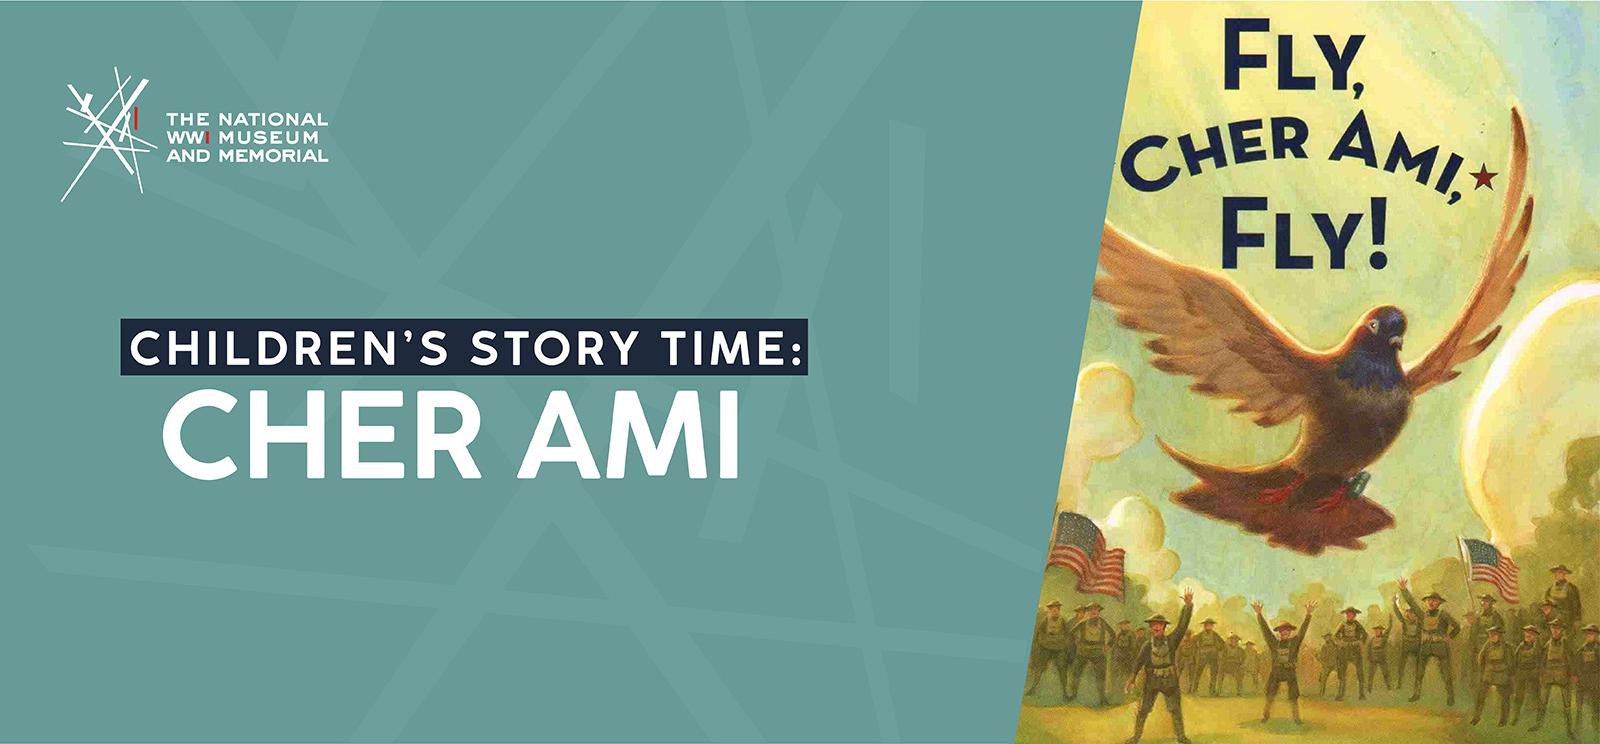 ရုပ်ပုံ- စစ်သားများက အဝေးမှ ရွှင်လန်းနေချိန်တွင် ရှေ့ပိုင်း၌ ပျံသန်းနေသော ခိုတစ်ကောင်ကို သရုပ်ဖော်ထားသည့် ကလေးရုပ်ပြစာအုပ်၏ မျက်နှာဖုံး။ မျက်နှာဖုံးတွင် စာသား- 'Fly, Cher Ami, Fly!' ဂရပ်ဖစ်ပေါ်တွင် စာသား- 'ကလေးများ၏ ပုံပြင်အချိန်: / Cher Ami'